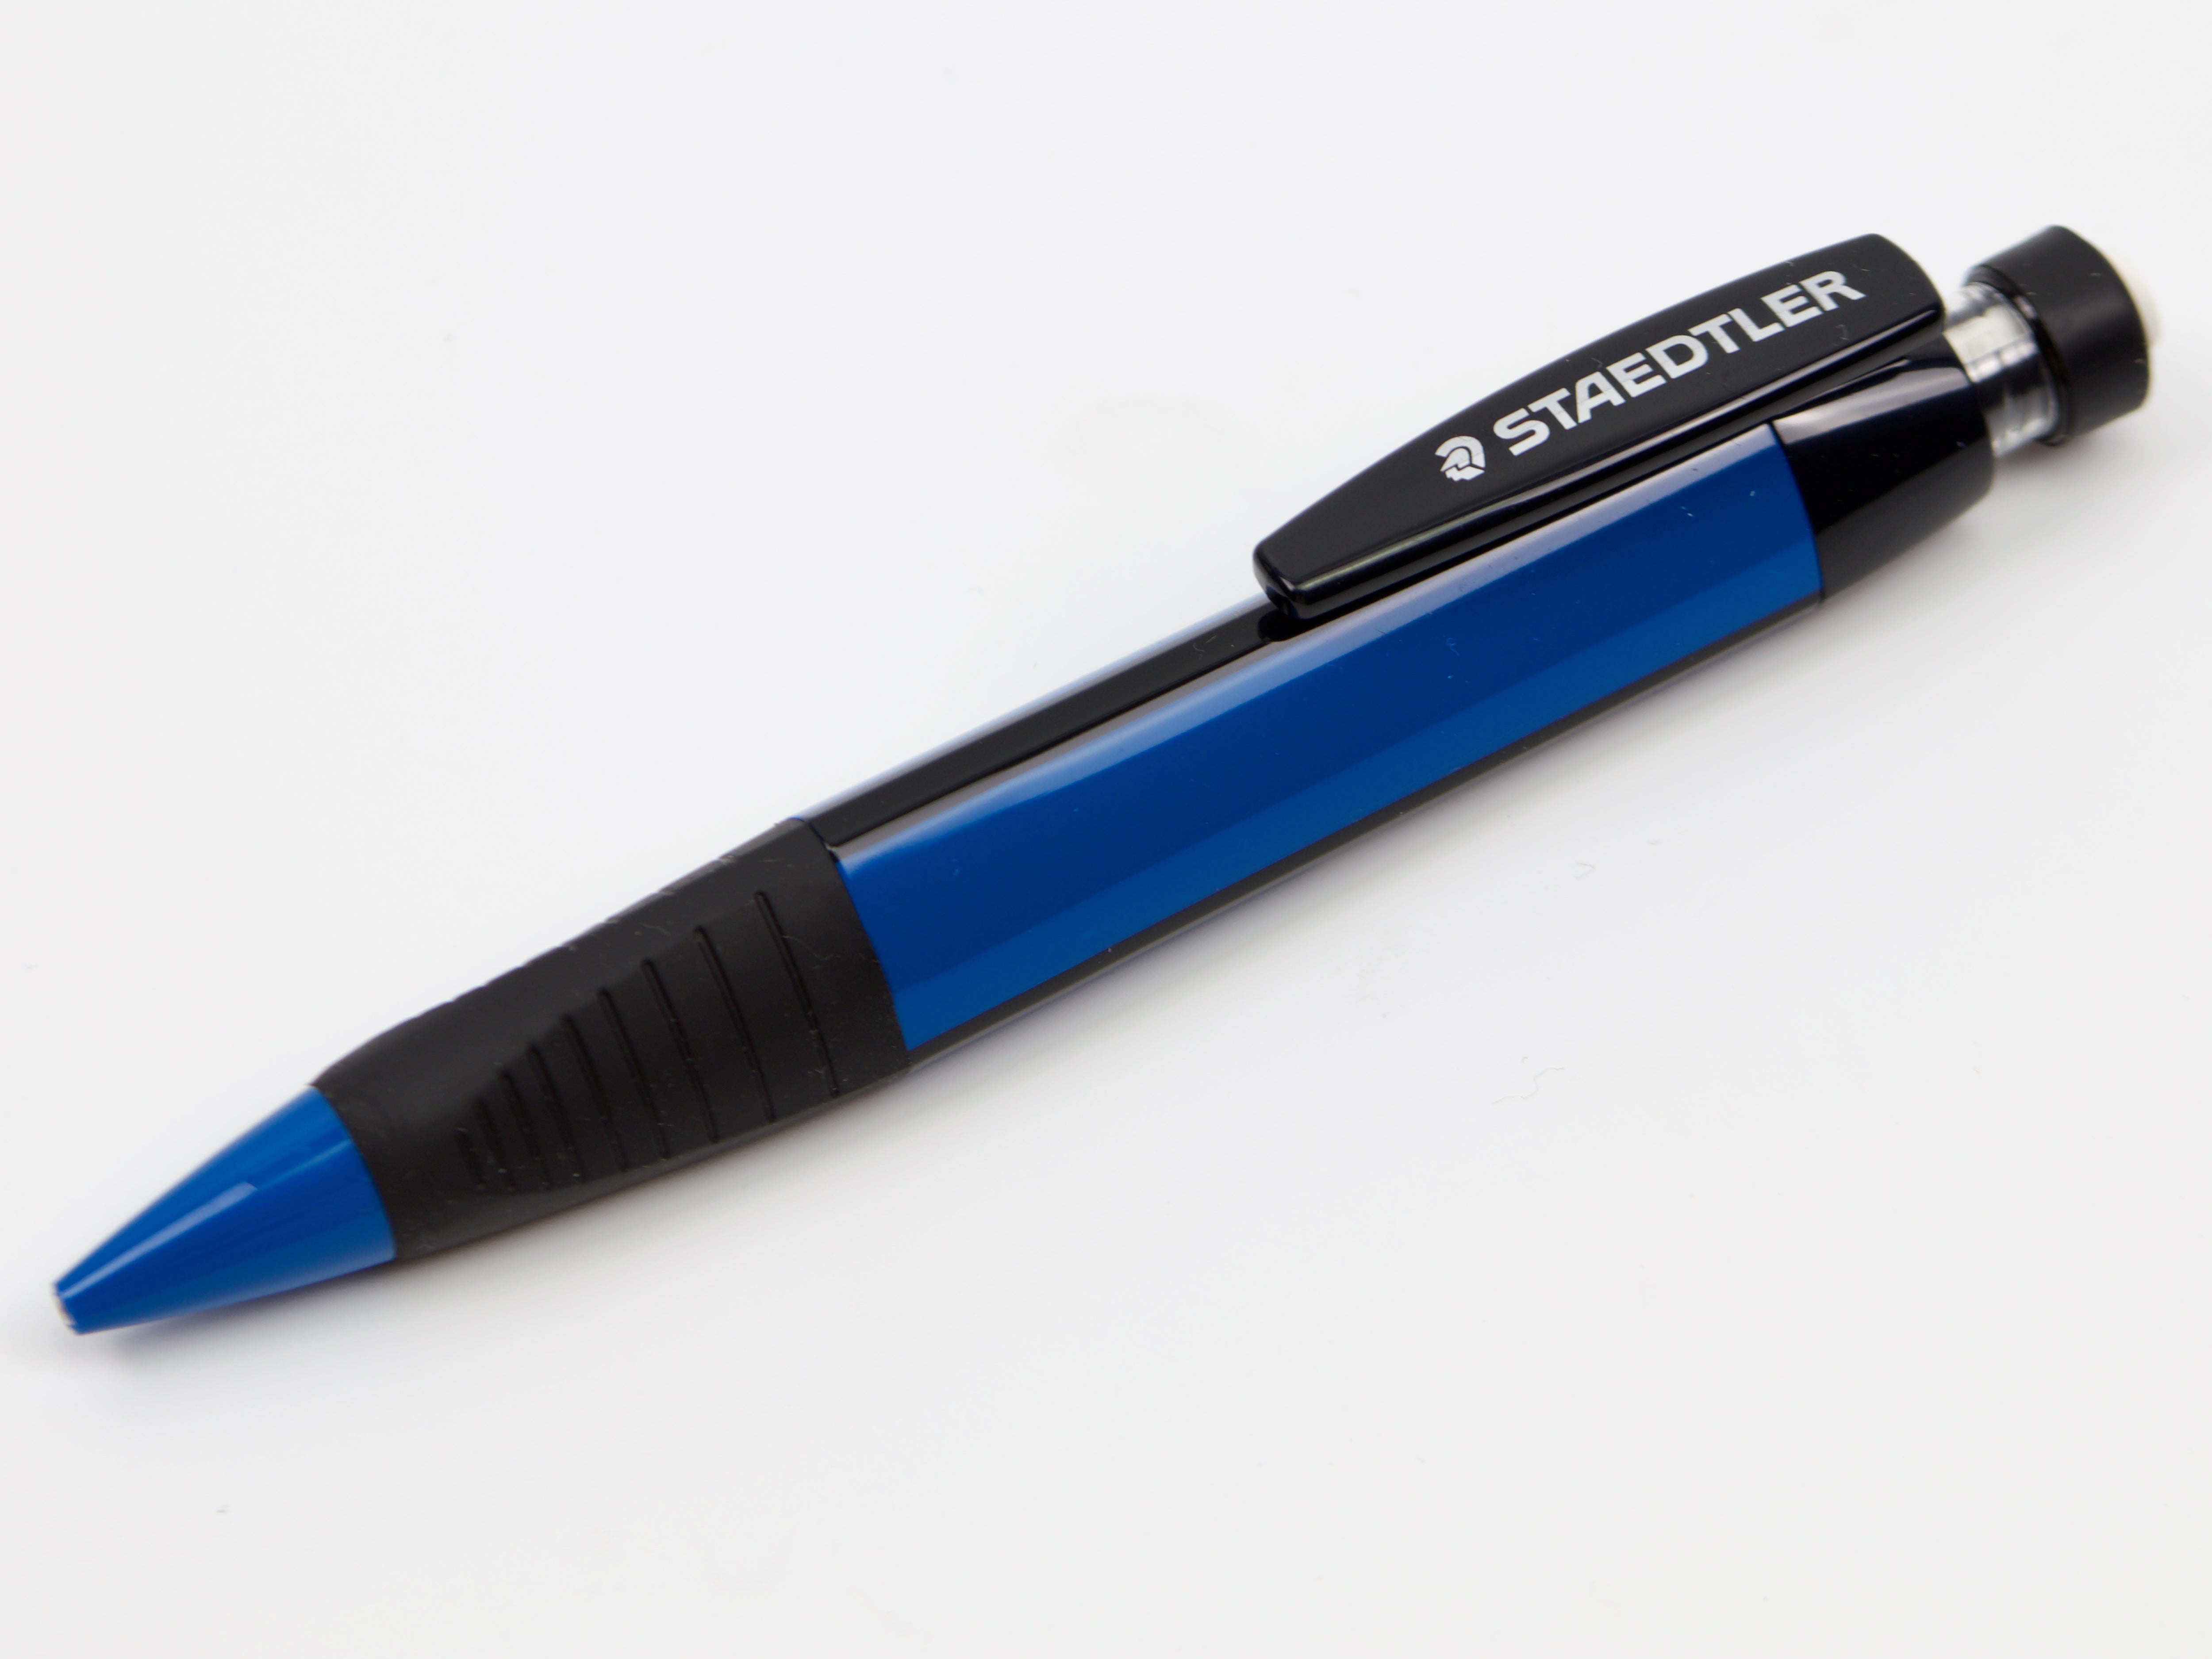 Staedtler DoubleEnded Watercolor Brush Pen Sets